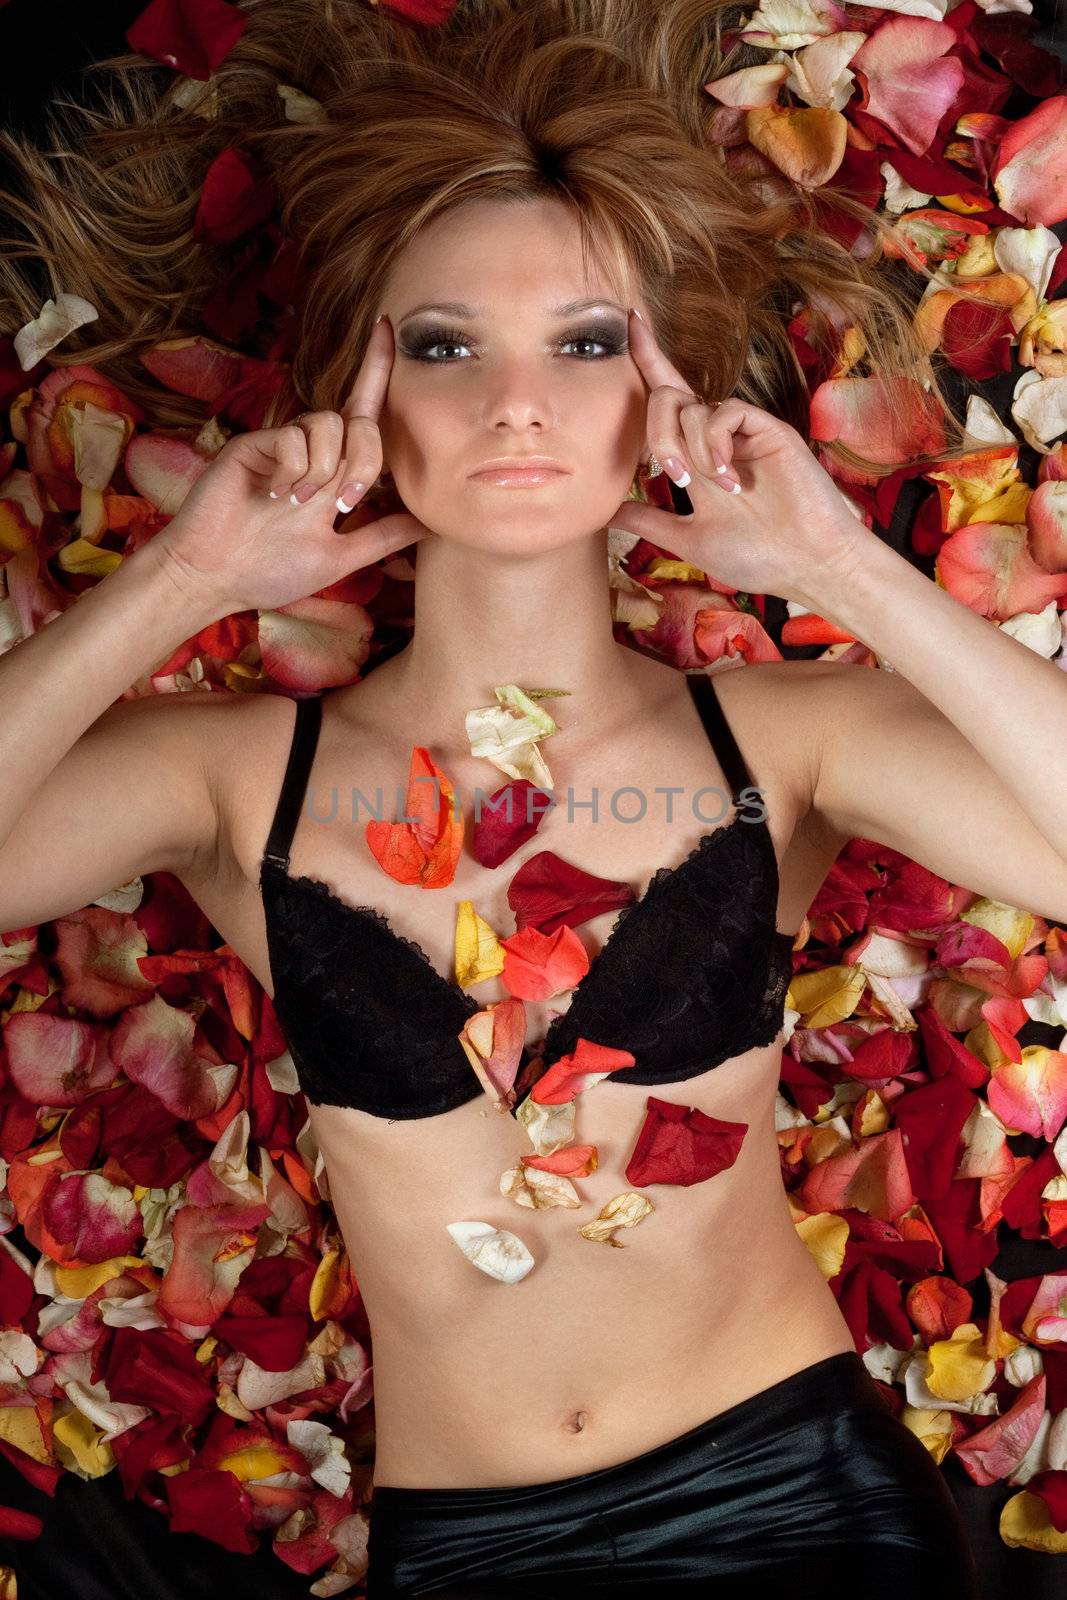 sensual blonde lying in rose petals by acidgrey